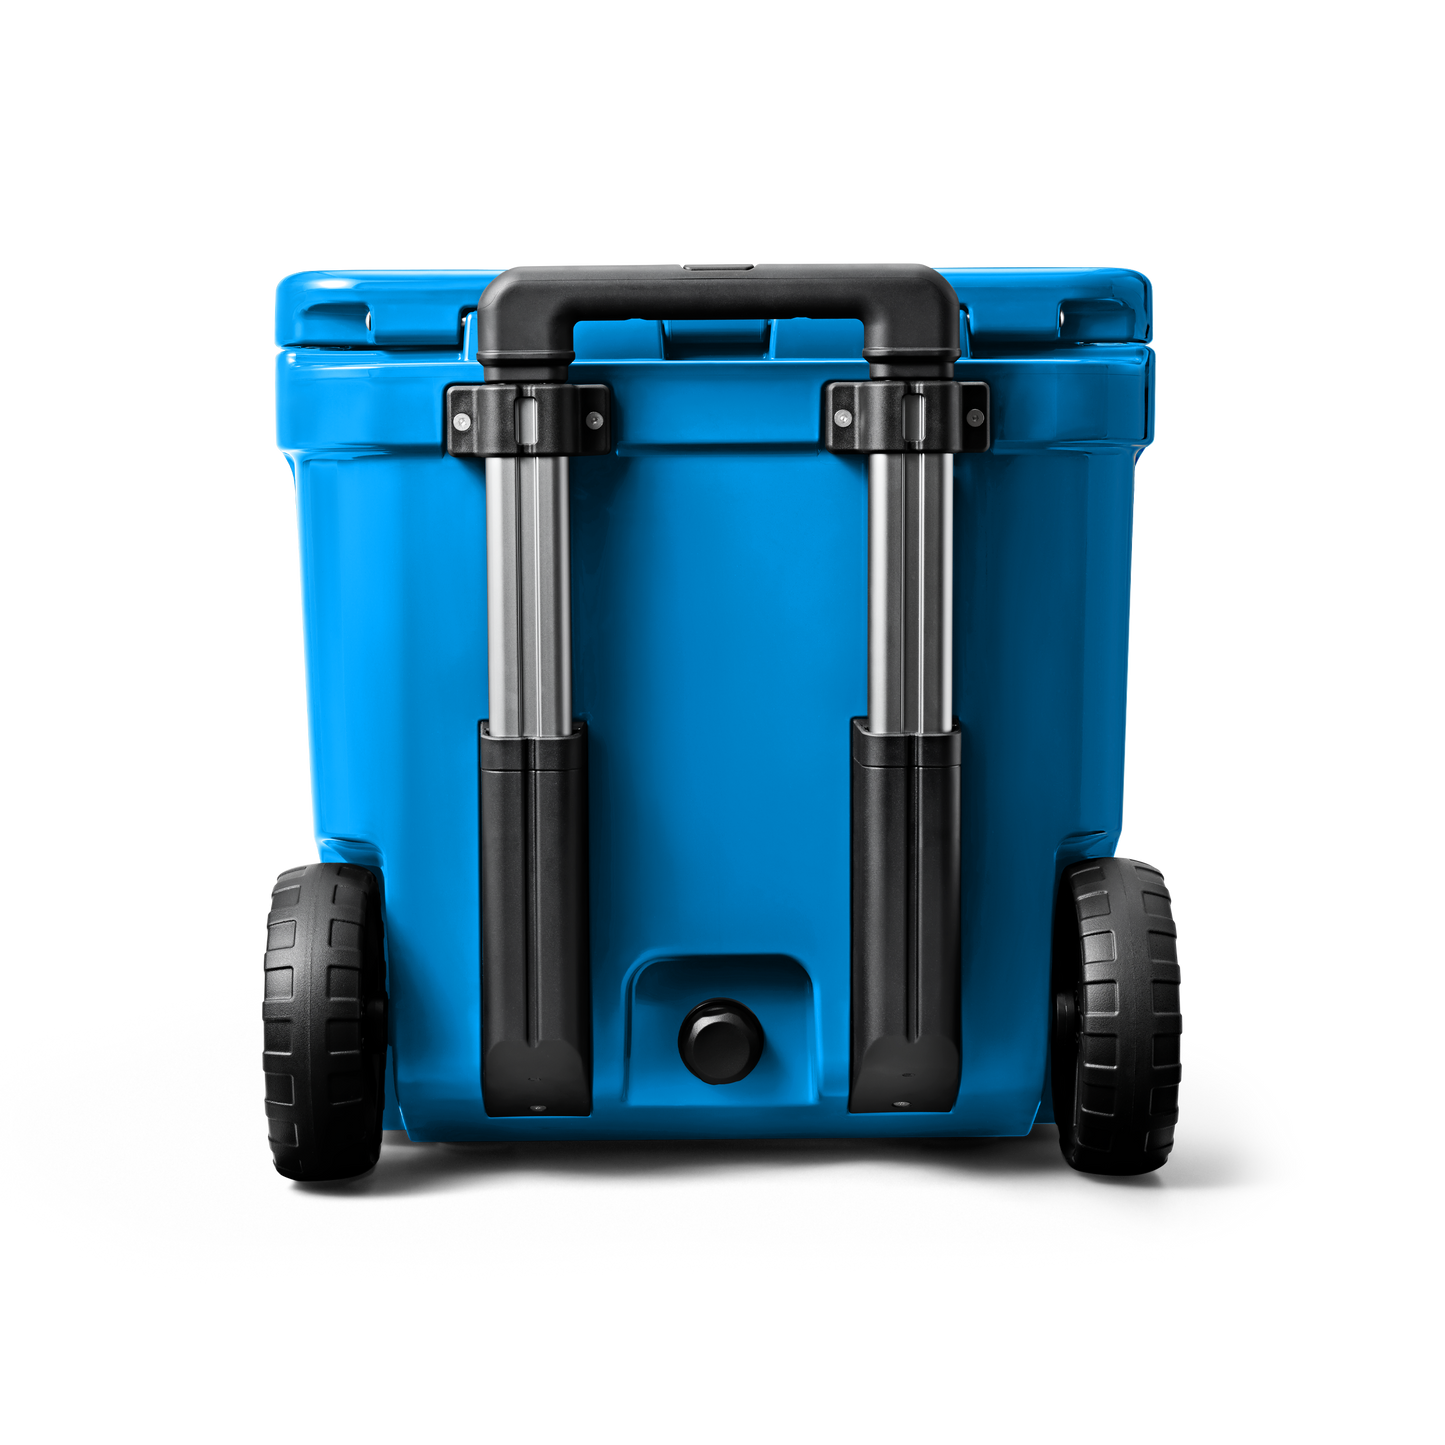 YETI Roadie® 48 Wheeled Cool Box Big Wave Blue